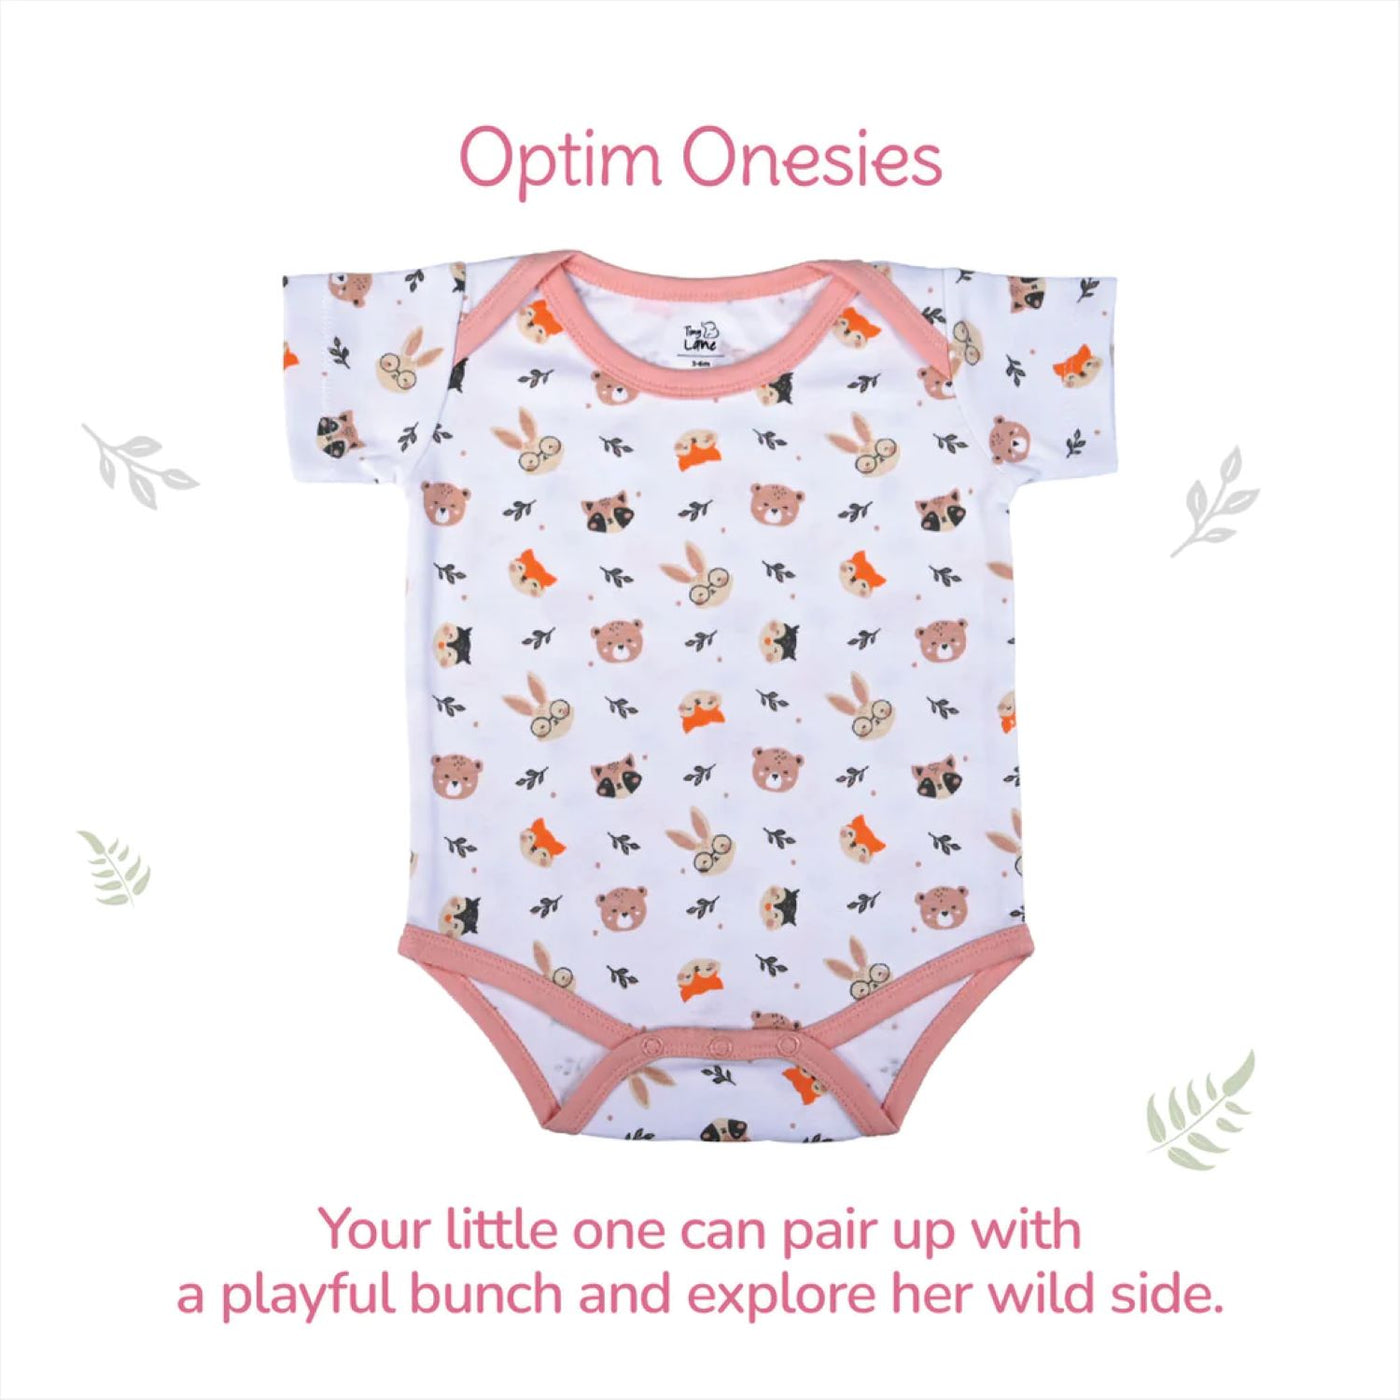 Tiny Lane Tiny Wild Series Infant Gift Set | Pack of 9 - Jhabla, Legging, Onesie, C/B/M, Bib, Blanket, Nappy